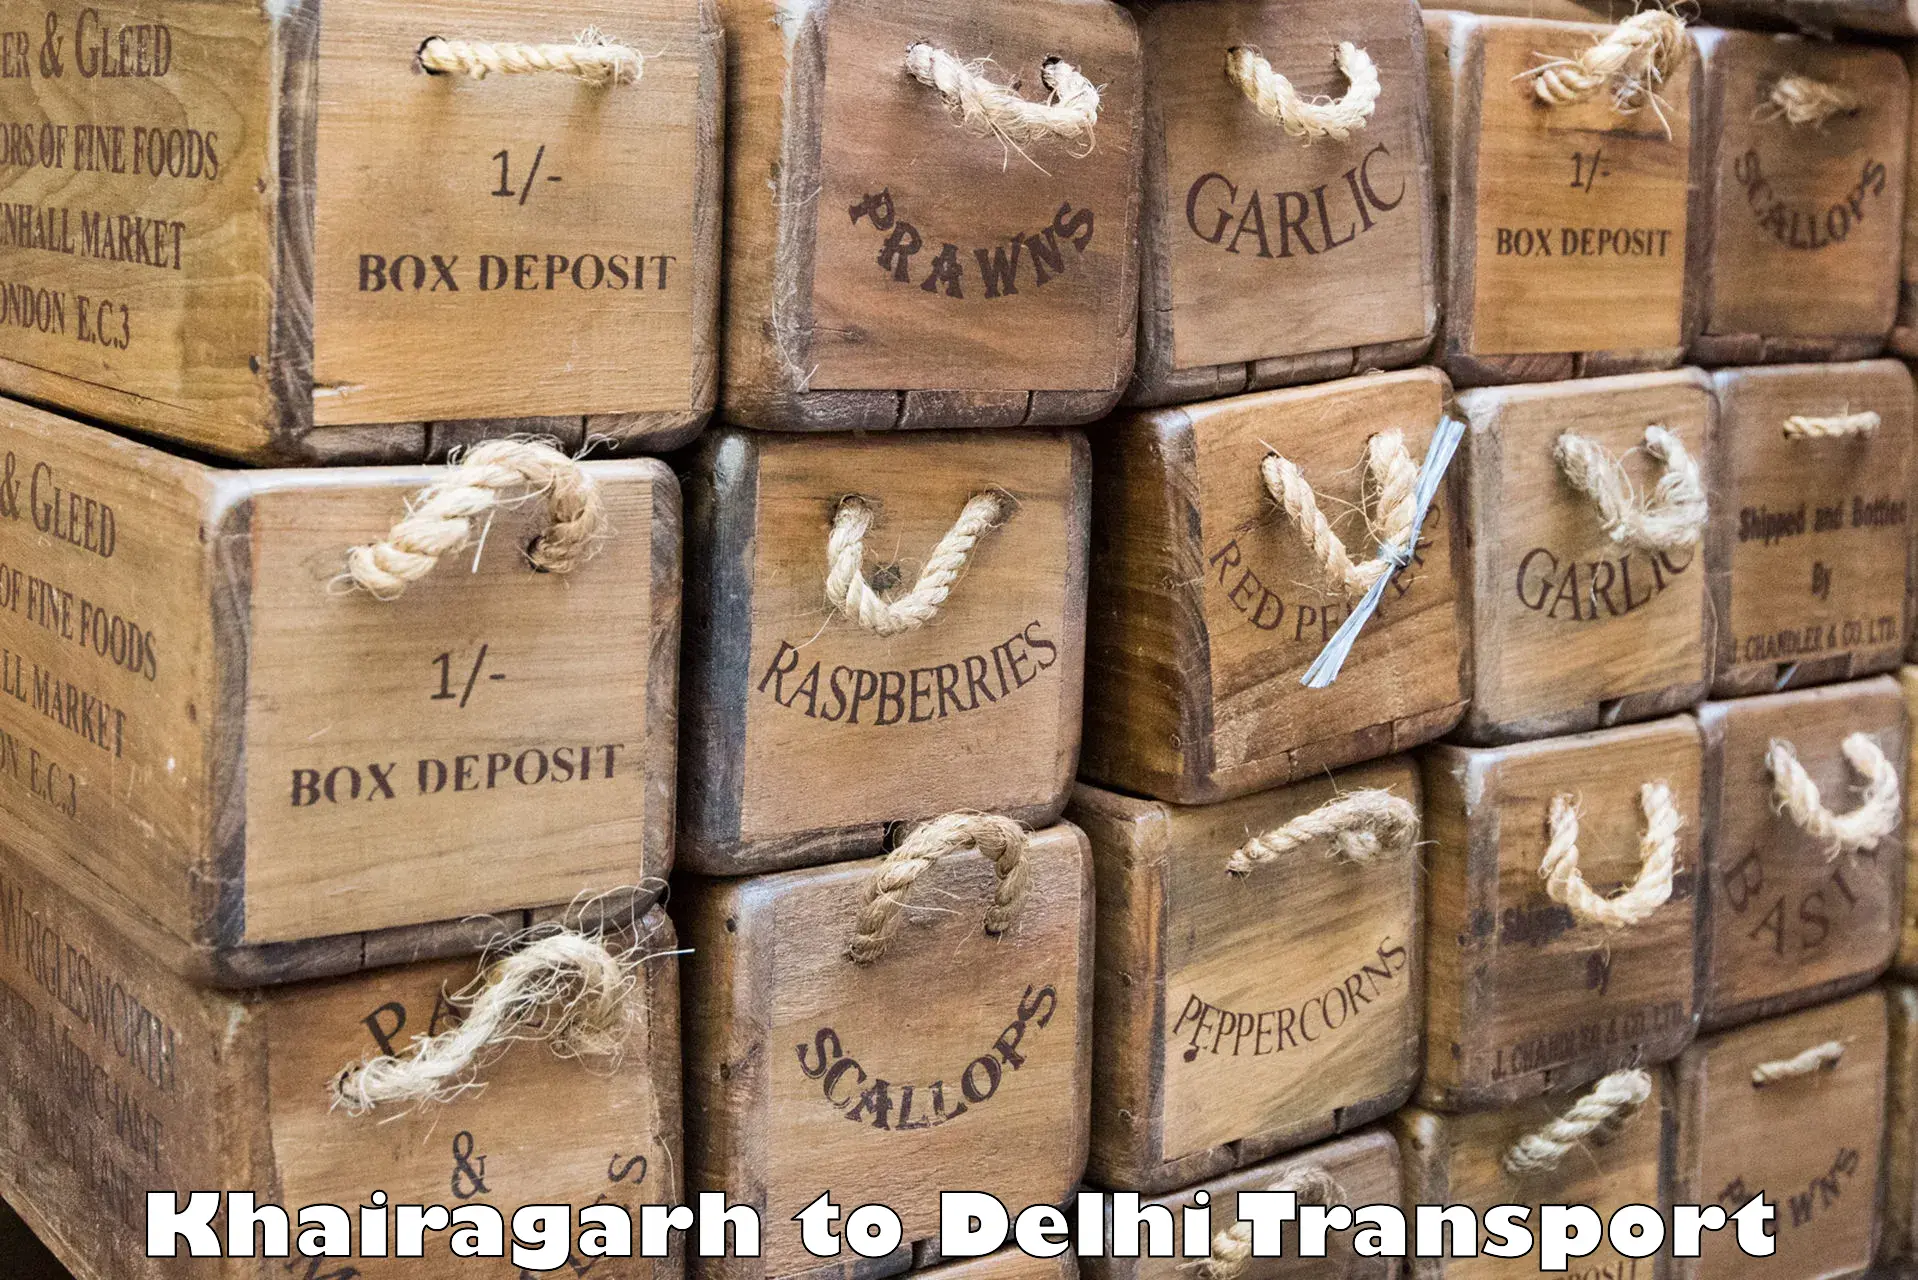 Online transport service Khairagarh to NIT Delhi